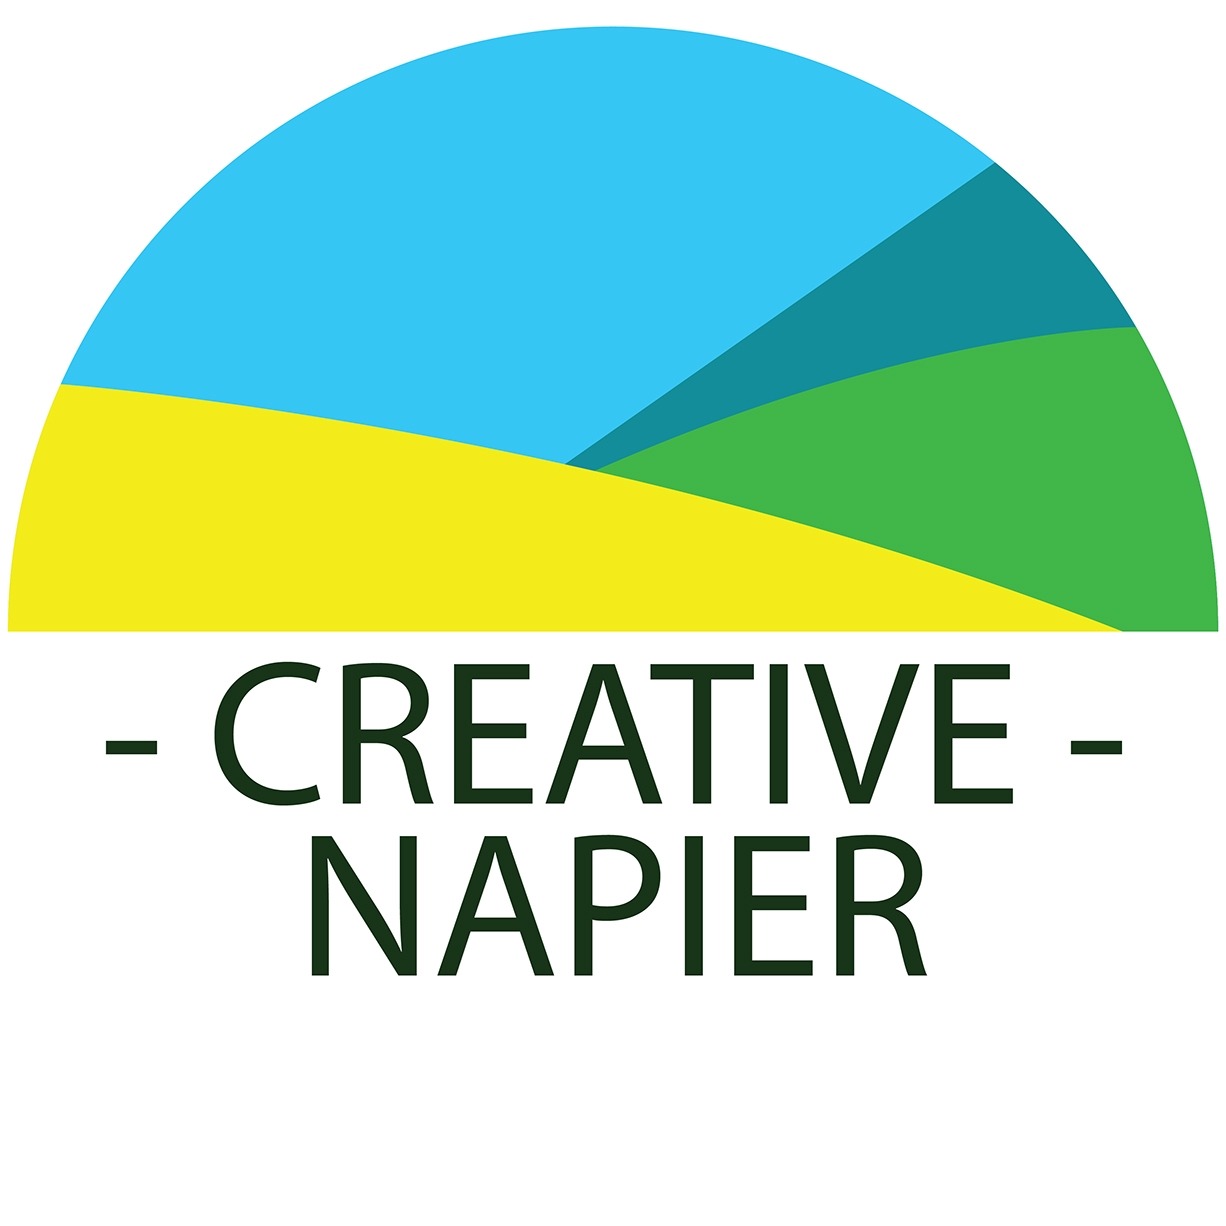 Creative Napier